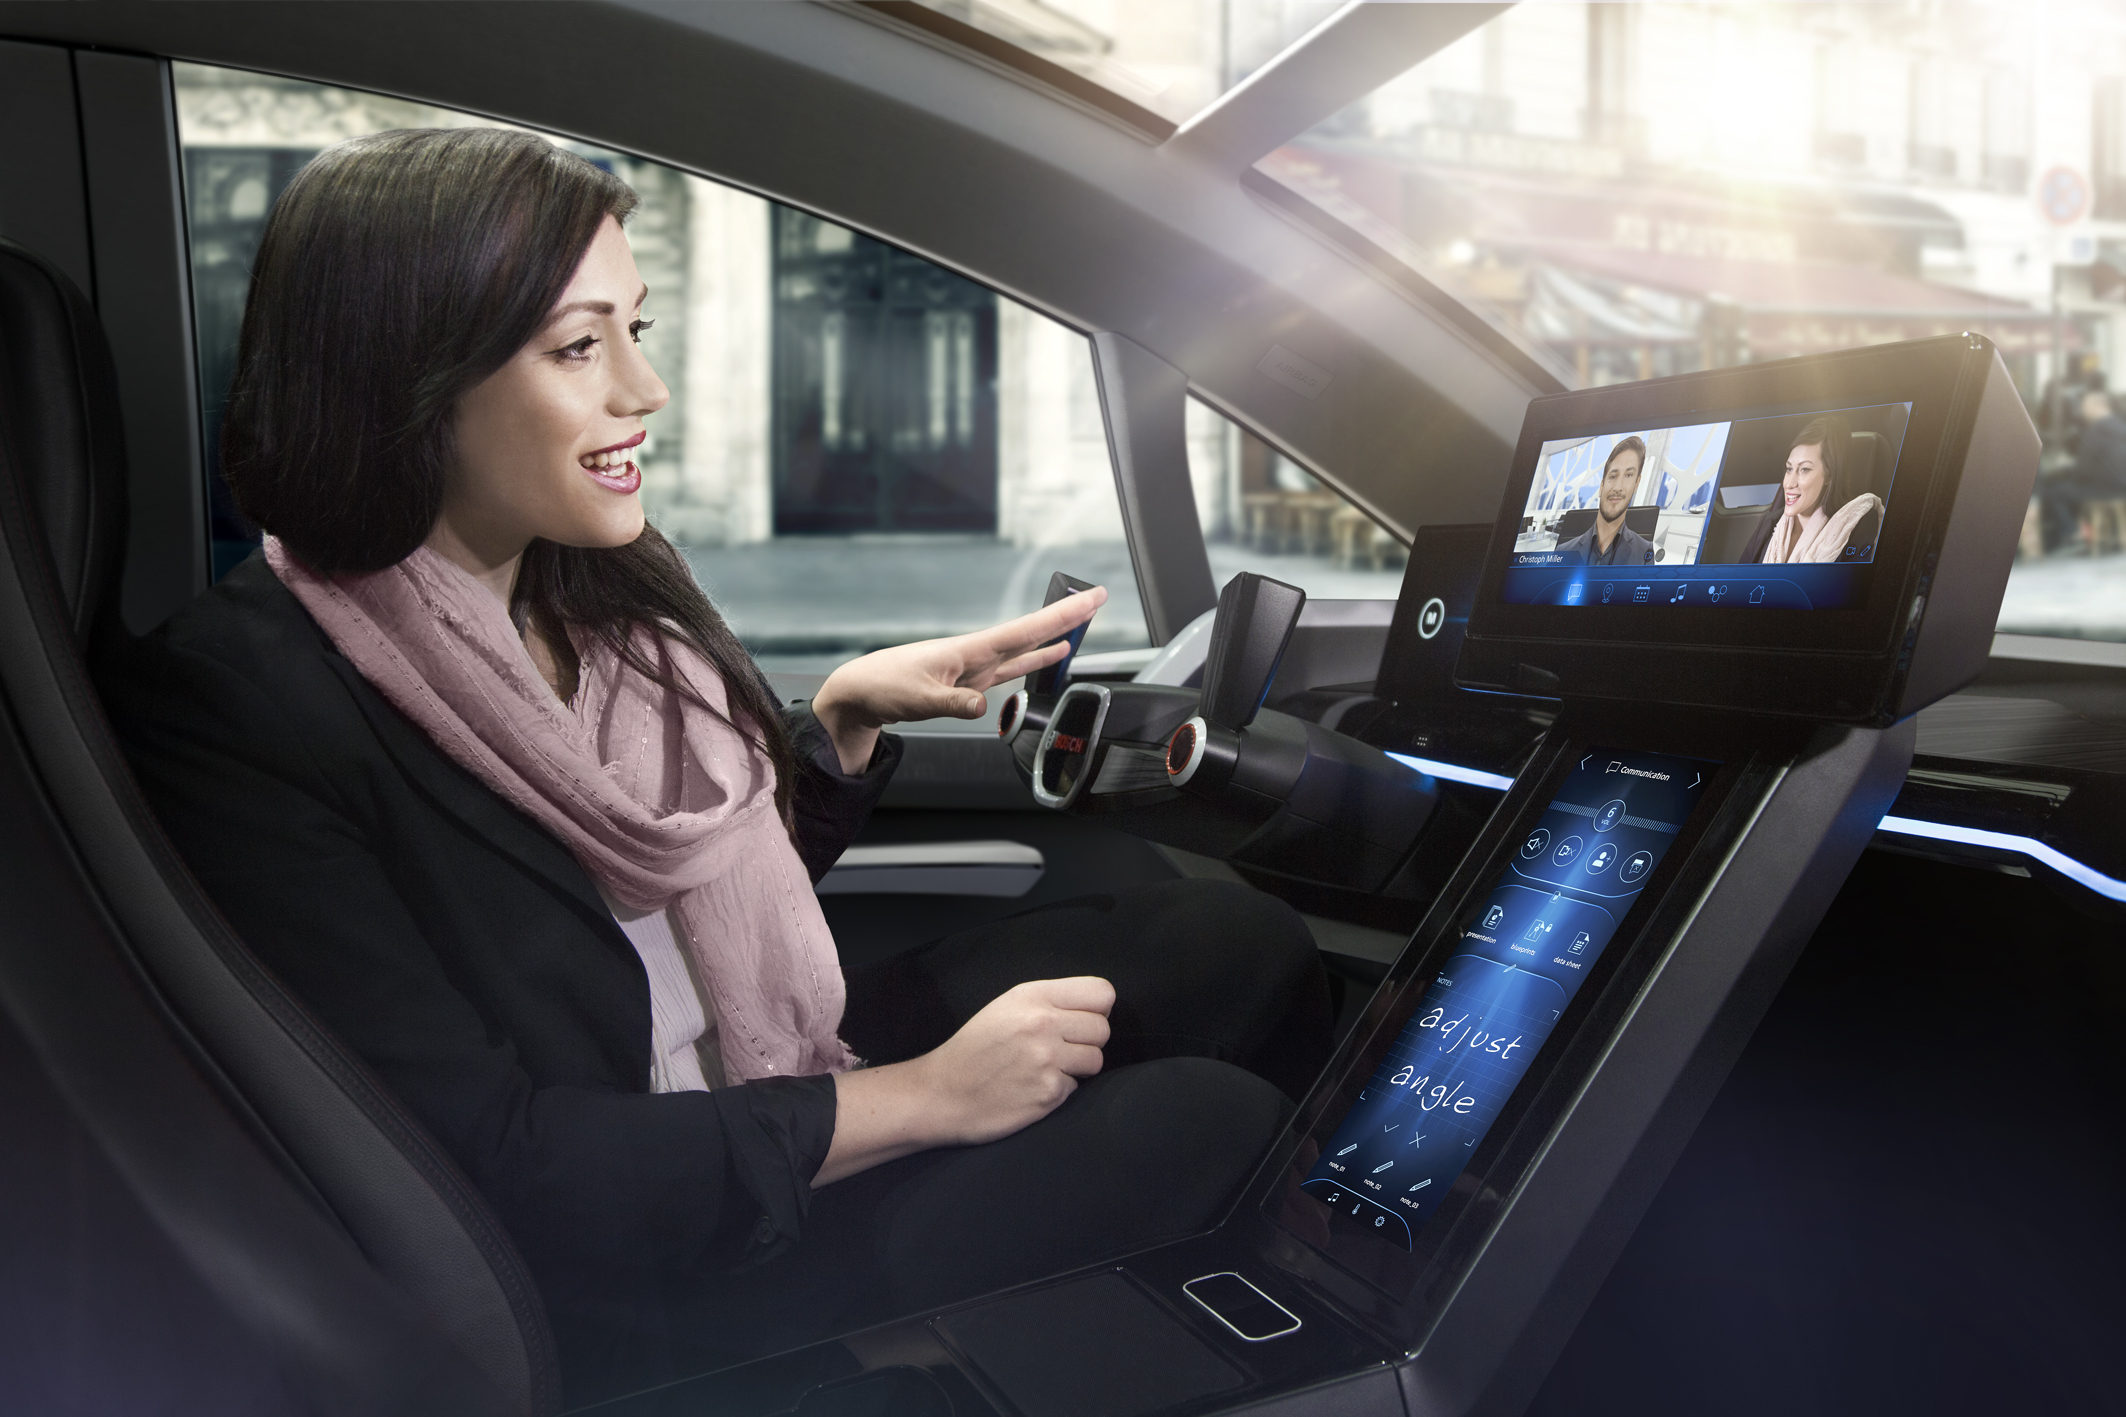 MOBIL AUTO TV – BOSCH razvija veštačku inteligenciju u automobilima